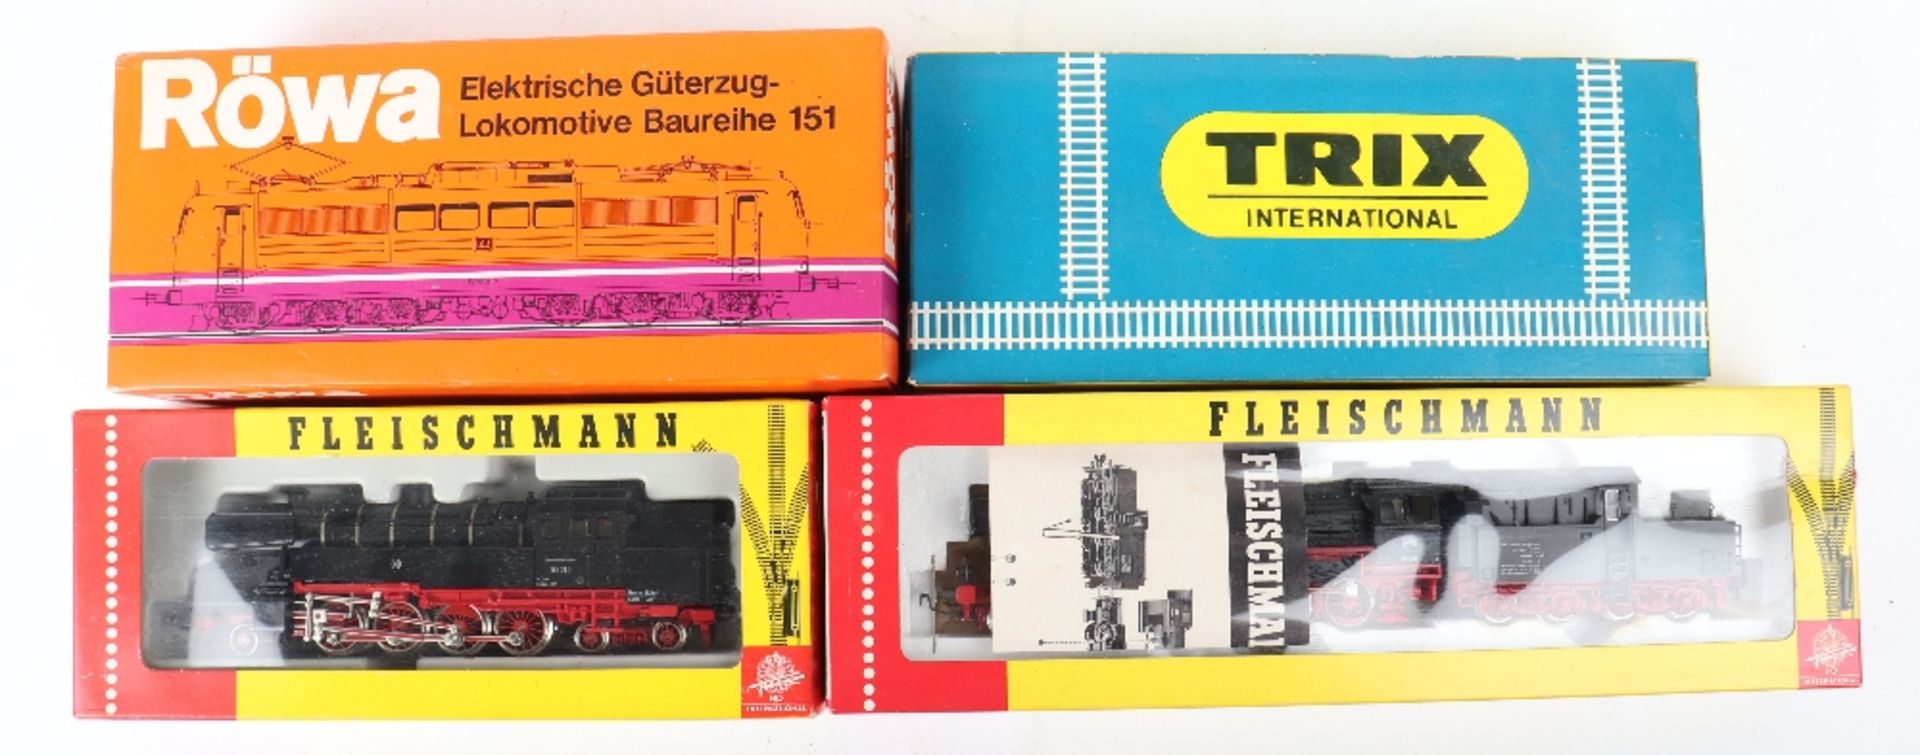 Fleischmann, Trix and Rowa H0 gauge boxed locomotives